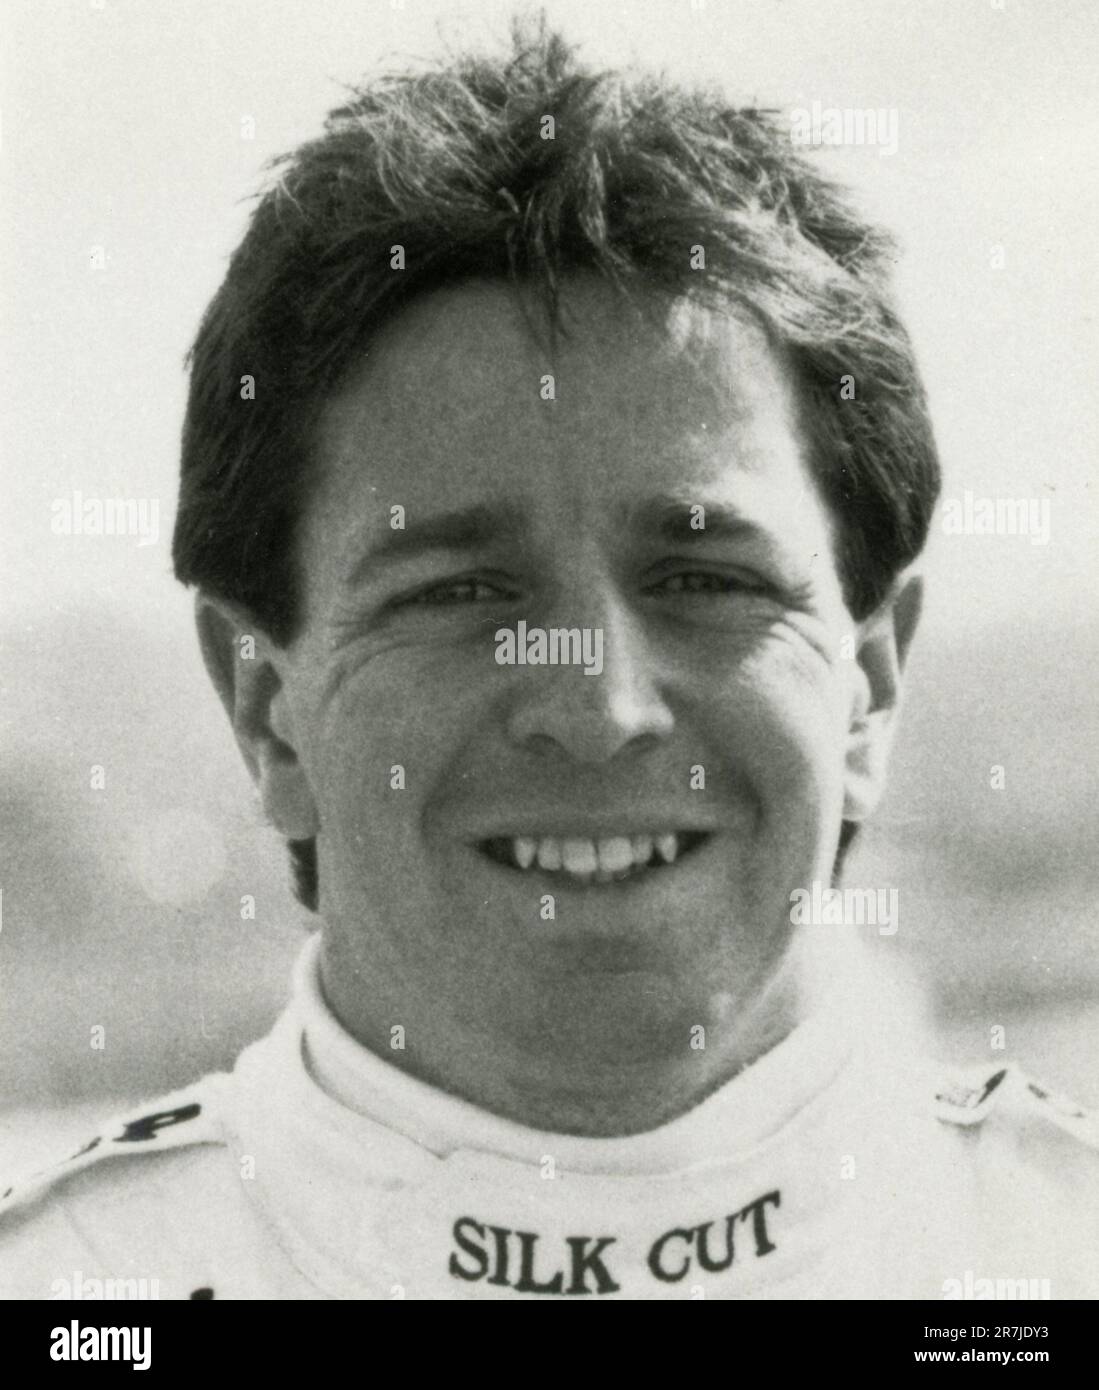 British car racing Jaguar Silk Cut pilot Martin Brundle, UK 1987 Stock Photo